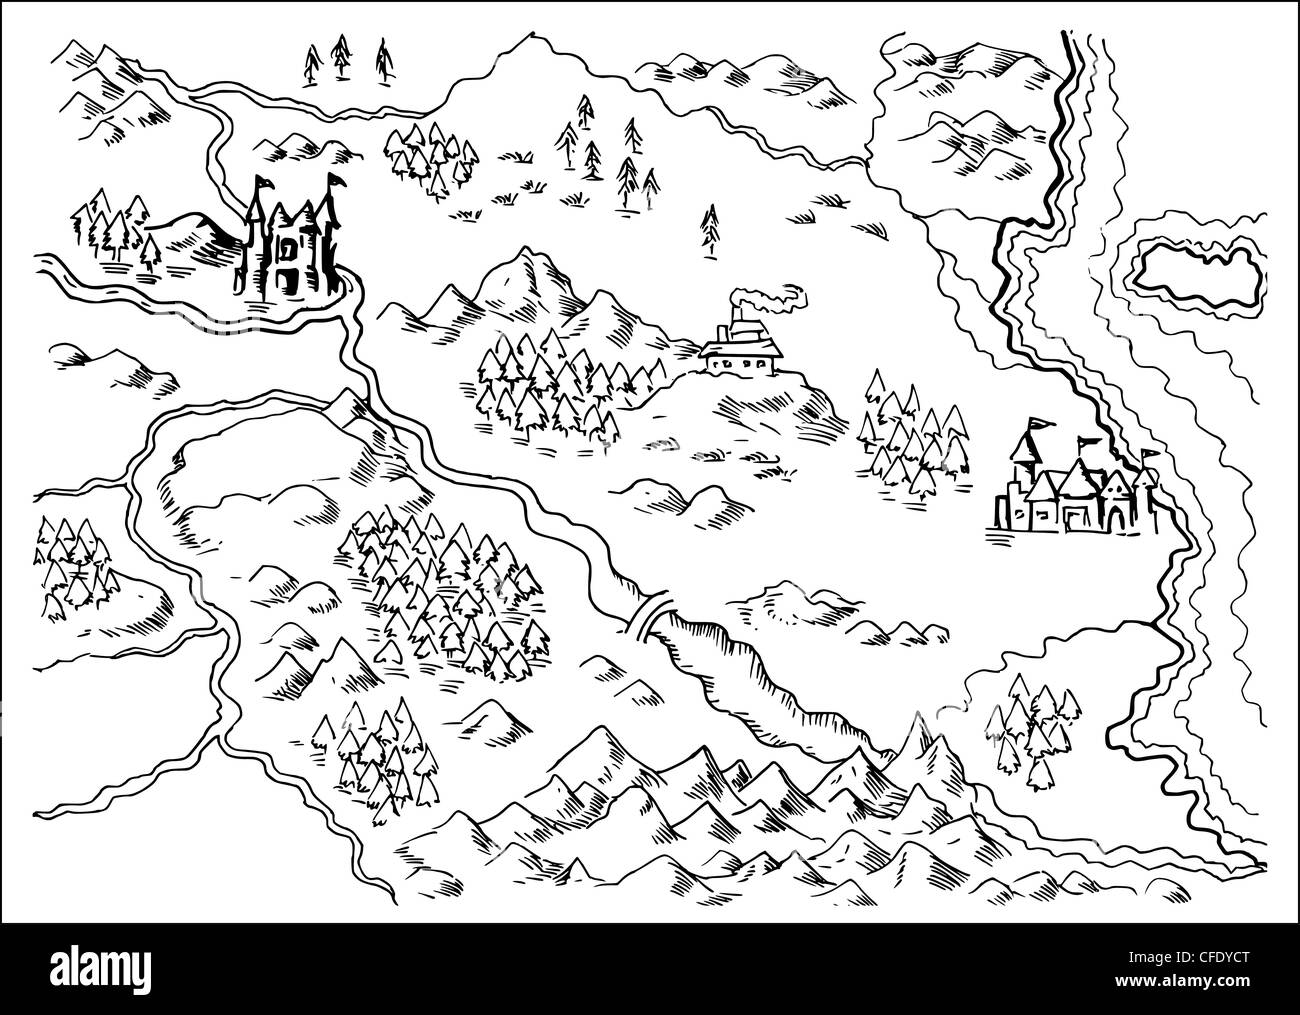 Illustration dessin d'une carte d'un pays imaginaire montrant les rivières, de montagnes,arbres,monastère,châteaux,route,mer,terre,côte sur fond blanc Banque D'Images